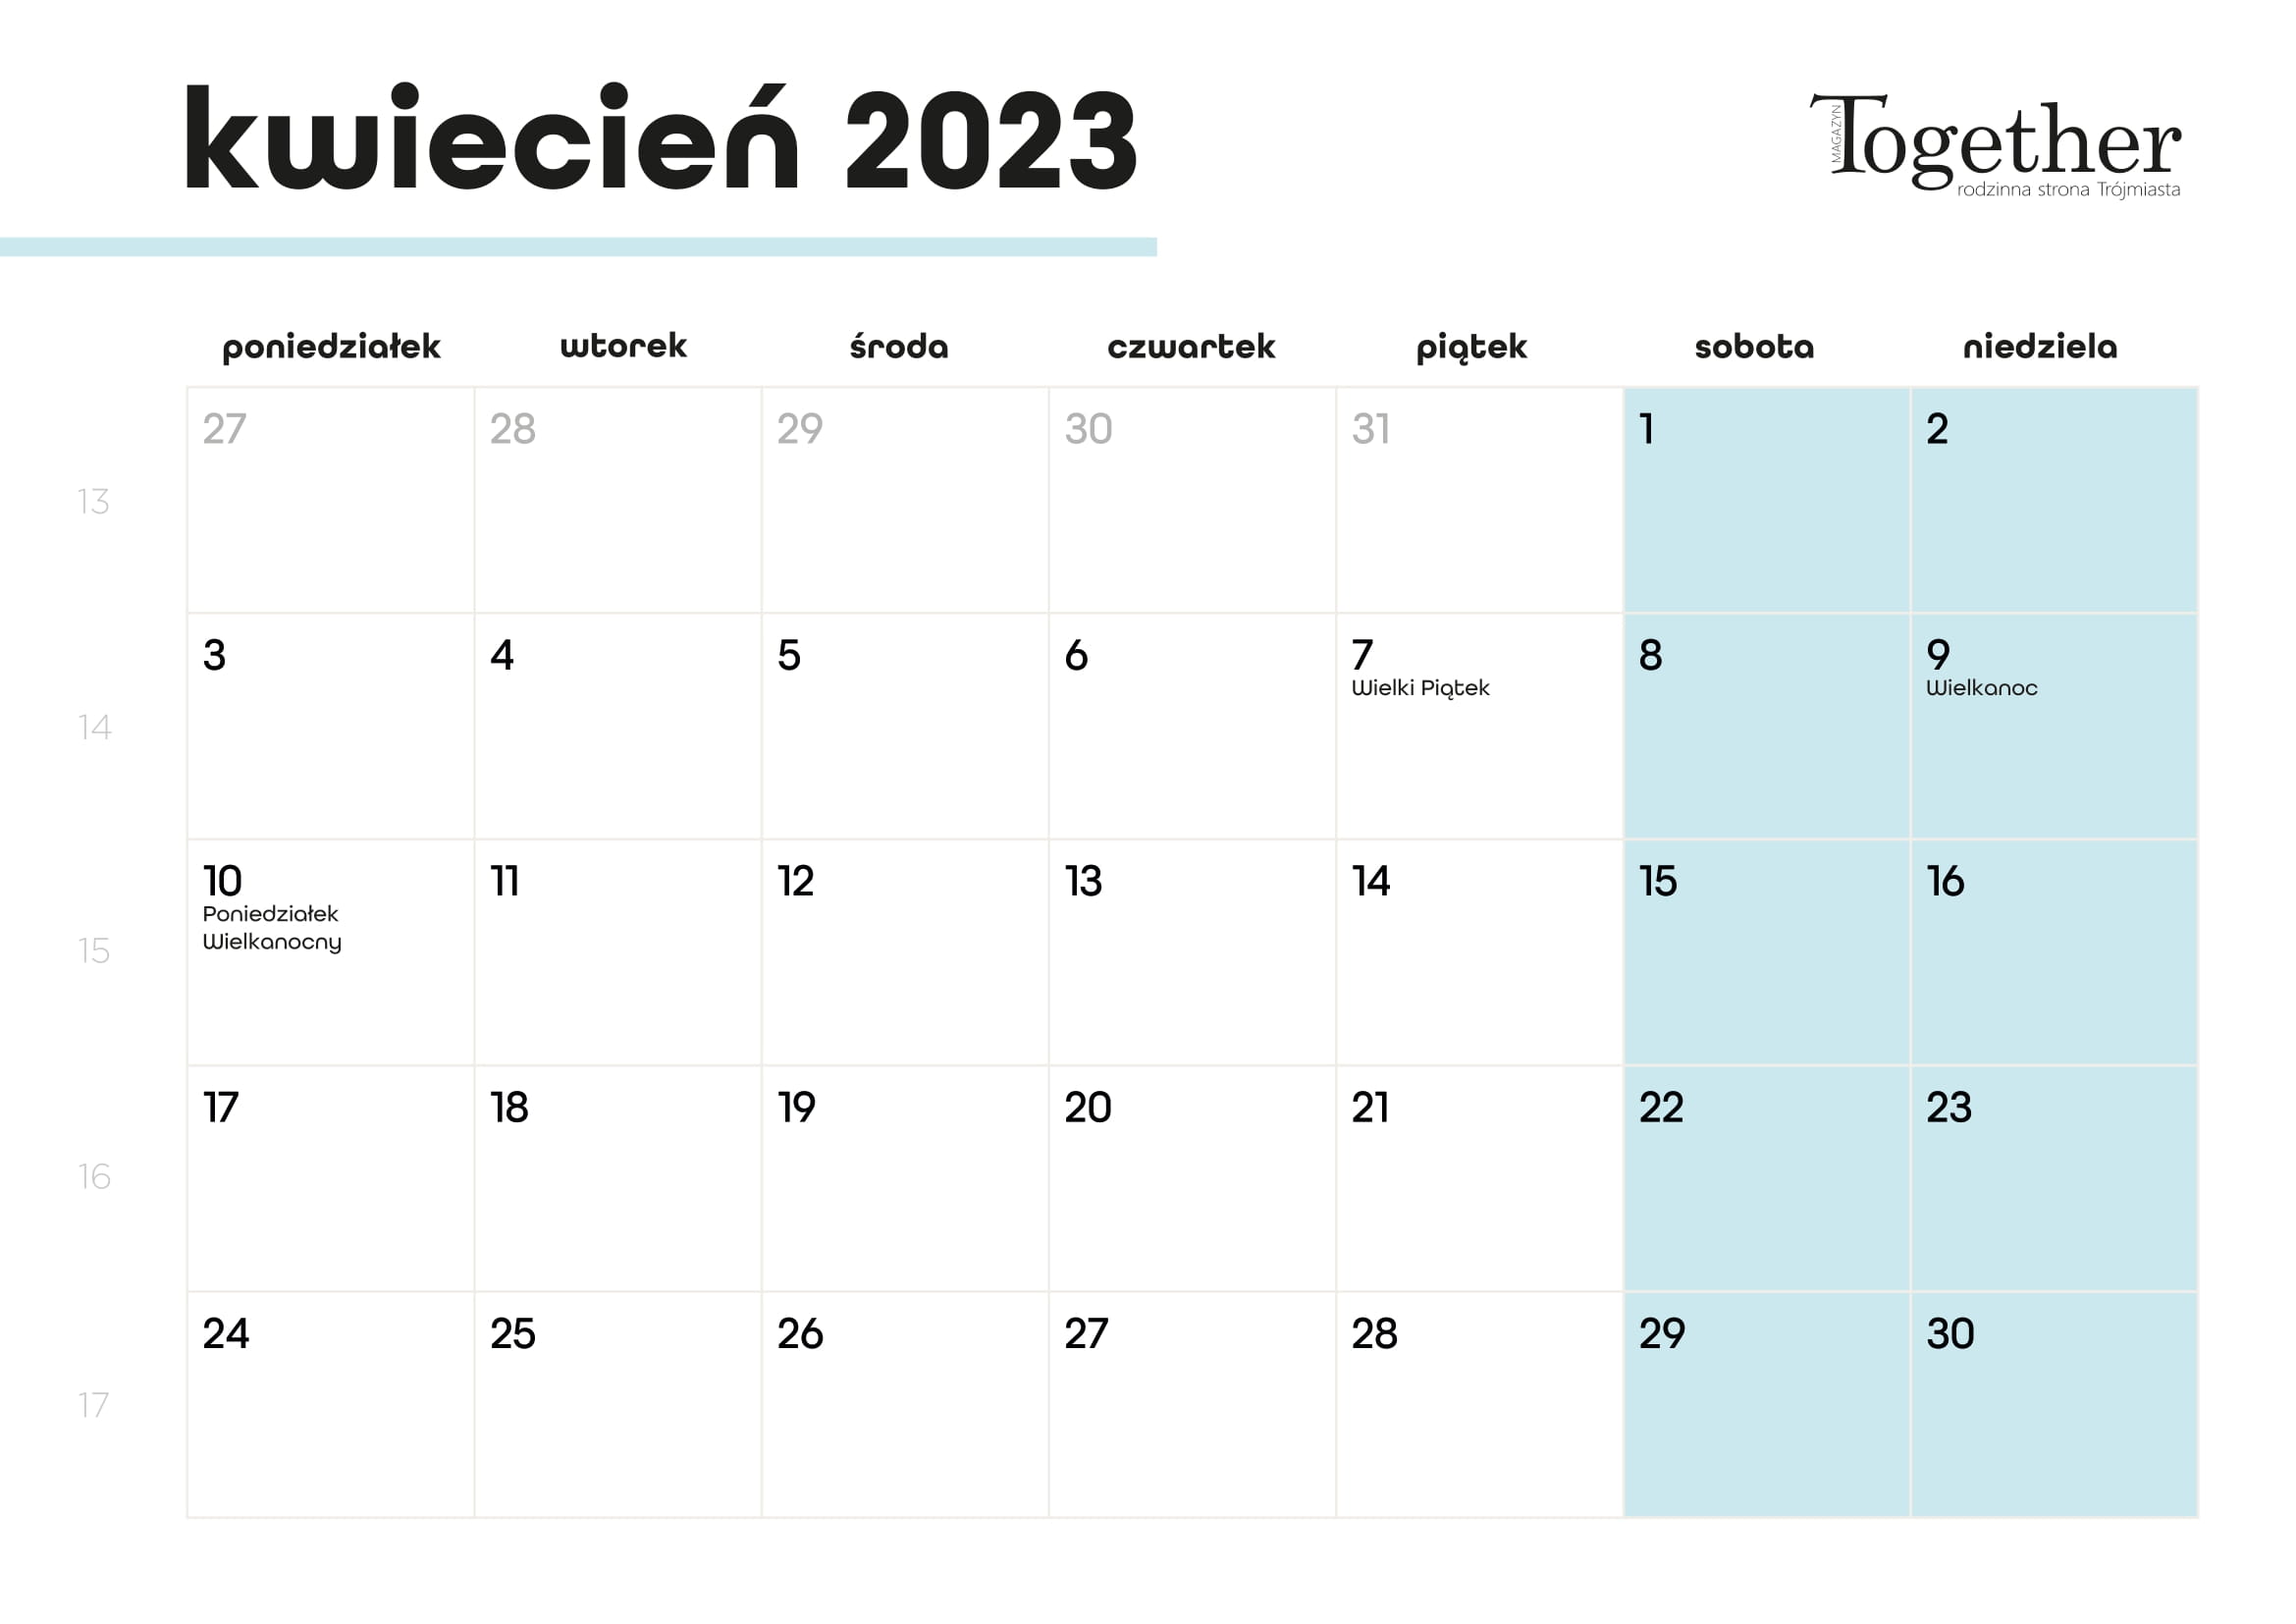 Kalendarz kwiecień 2023 - pobierz i wydrukuj za darmo najlepszy kalendarz 2023 kwiecień